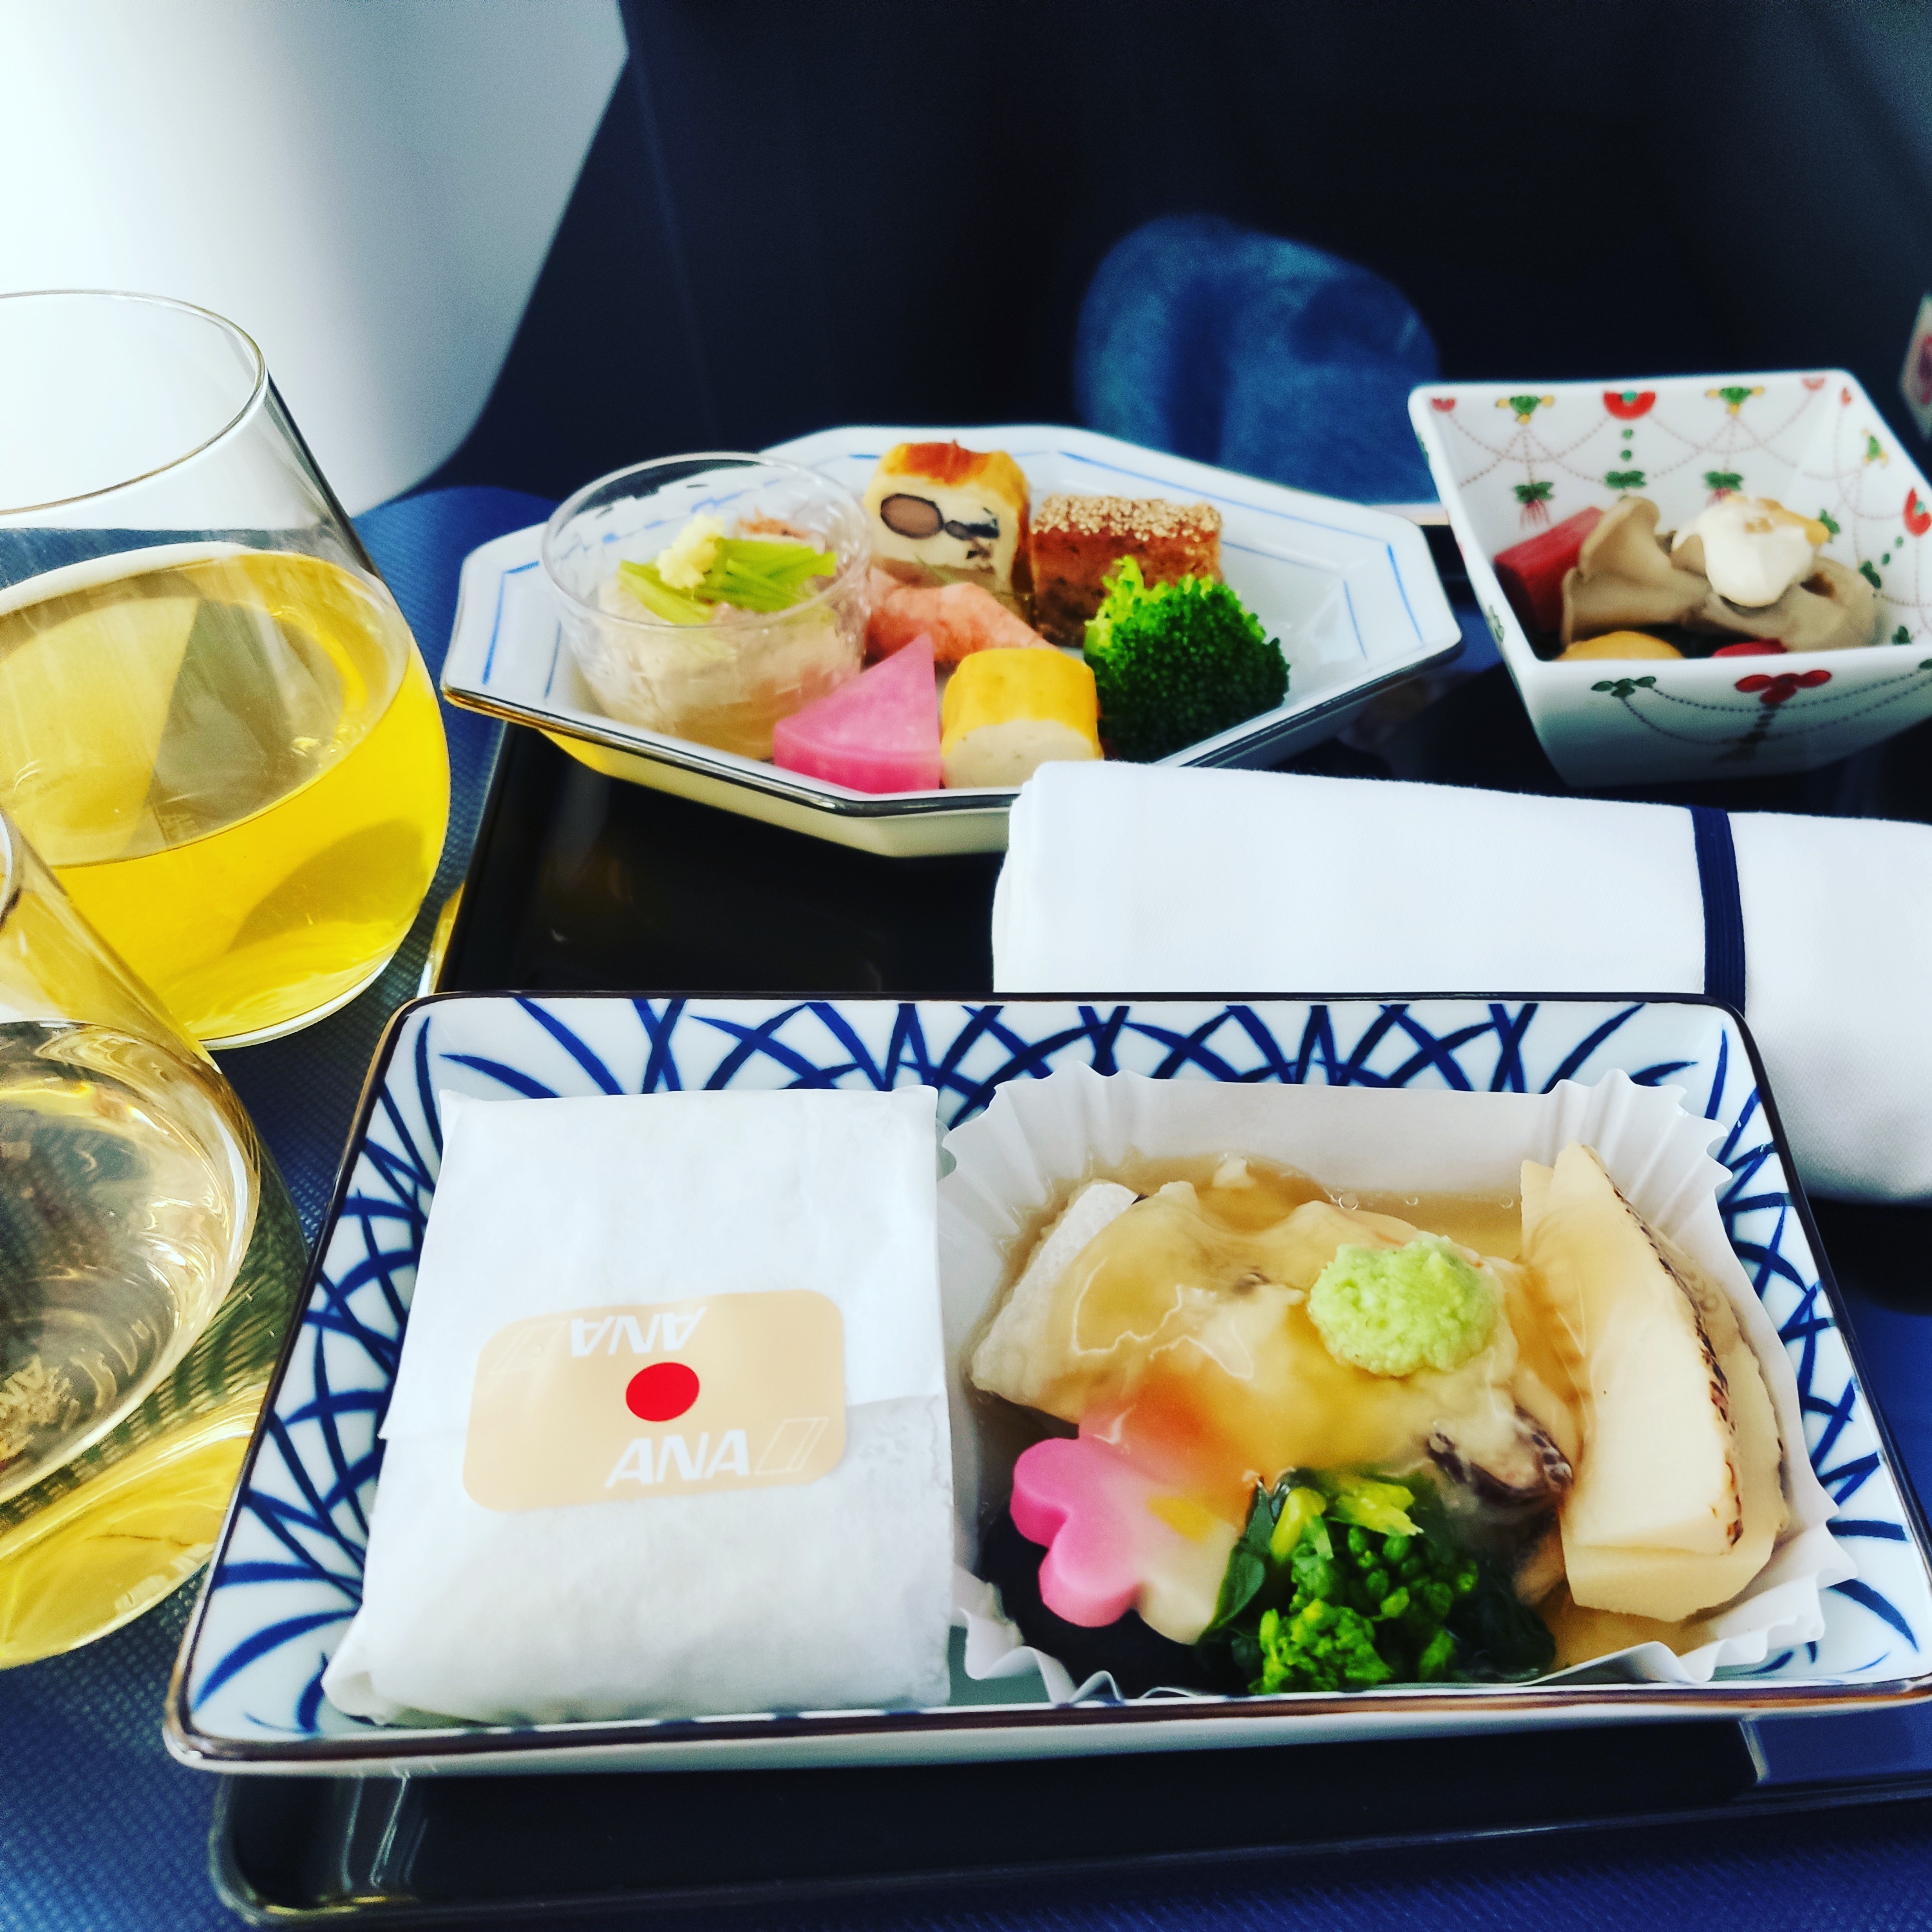 ANA羽田マニラ便のビジネスクラスの機内食